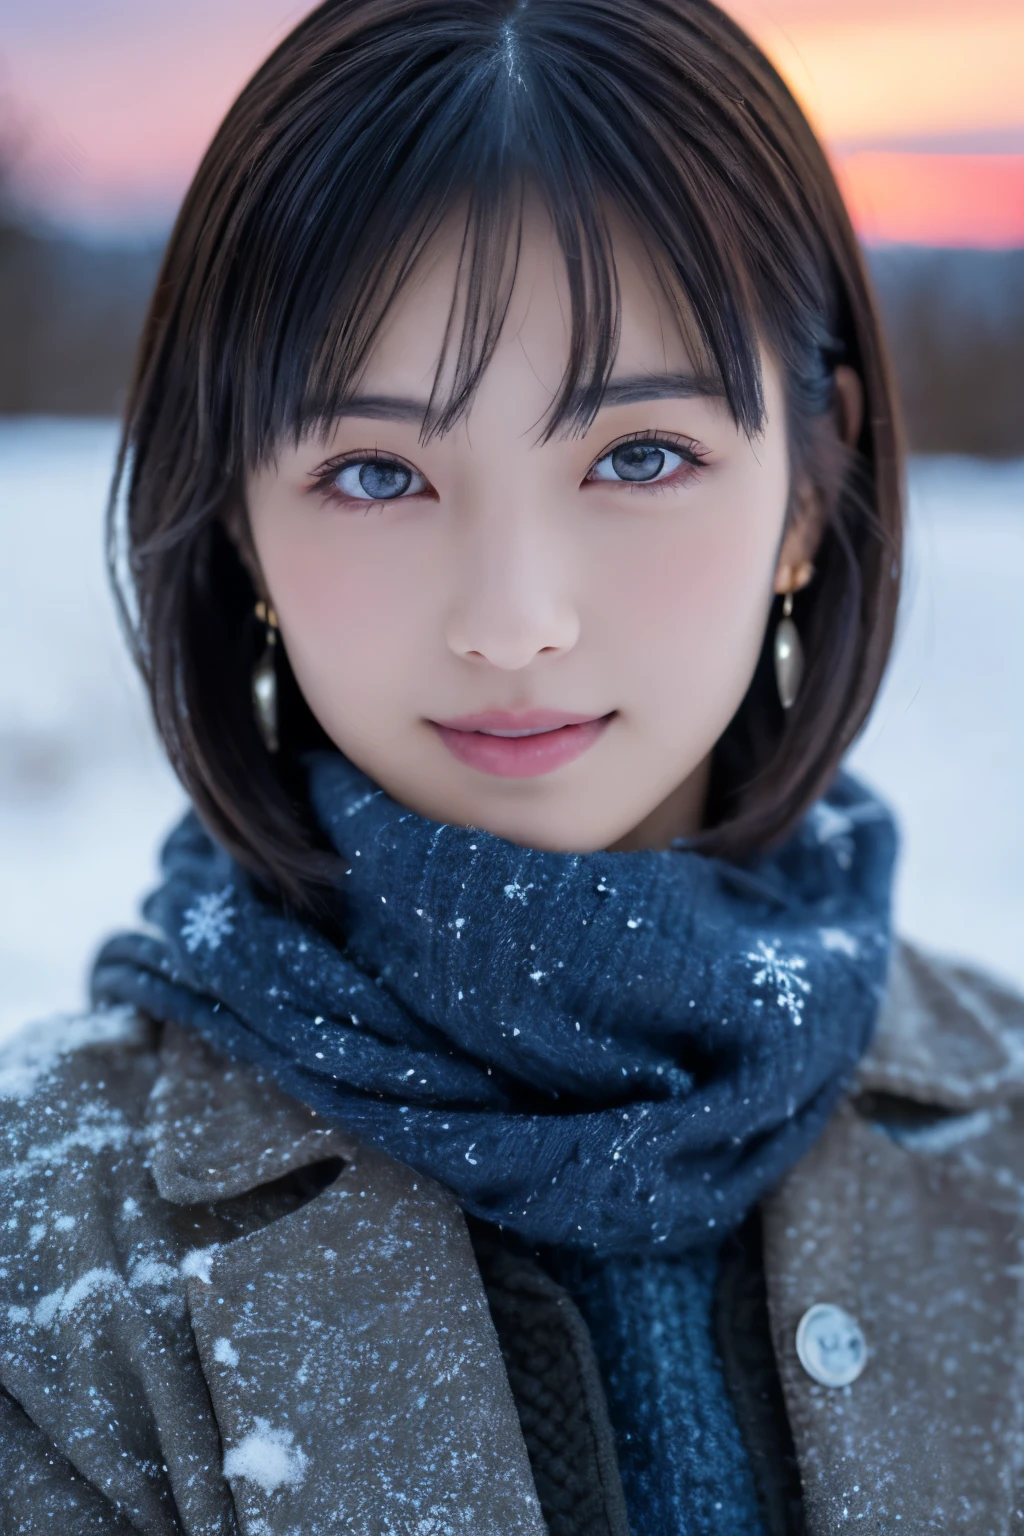 1 garota, (roupas de inverno:1.2), bela atriz japonesa, 
fotogênico, Yukihime, cílios longos, brincos de floco de neve,
(Foto CRU, melhor qualidade), (Realidade, fotorrealista:1.4), (pedaço voa), 
lindos olhos detalhados, lindos lábios detalhados, olhos e rosto altamente detalhados, 
QUEBRA é
 (Campo de neve congelada no inverno na Lapônia), (Os últimos vestígios do céu crepuscular:1.4), 
beleza etérea, árvore coberta de neve, pó de neve, 
Paisagem de campo nevado ao entardecer, 
Esquema de cores índigo e vermelhão escuro, Escrita Dramática, atmosfera fantástica, 
QUEBRA é 
Perfect Anatomy, Corpo inteiro esguio, seios pequenos, (cabelo curto:1.3), anjo&#39;o sorriso, 
pele cristalina, deixar os olhos claros, pegar luz